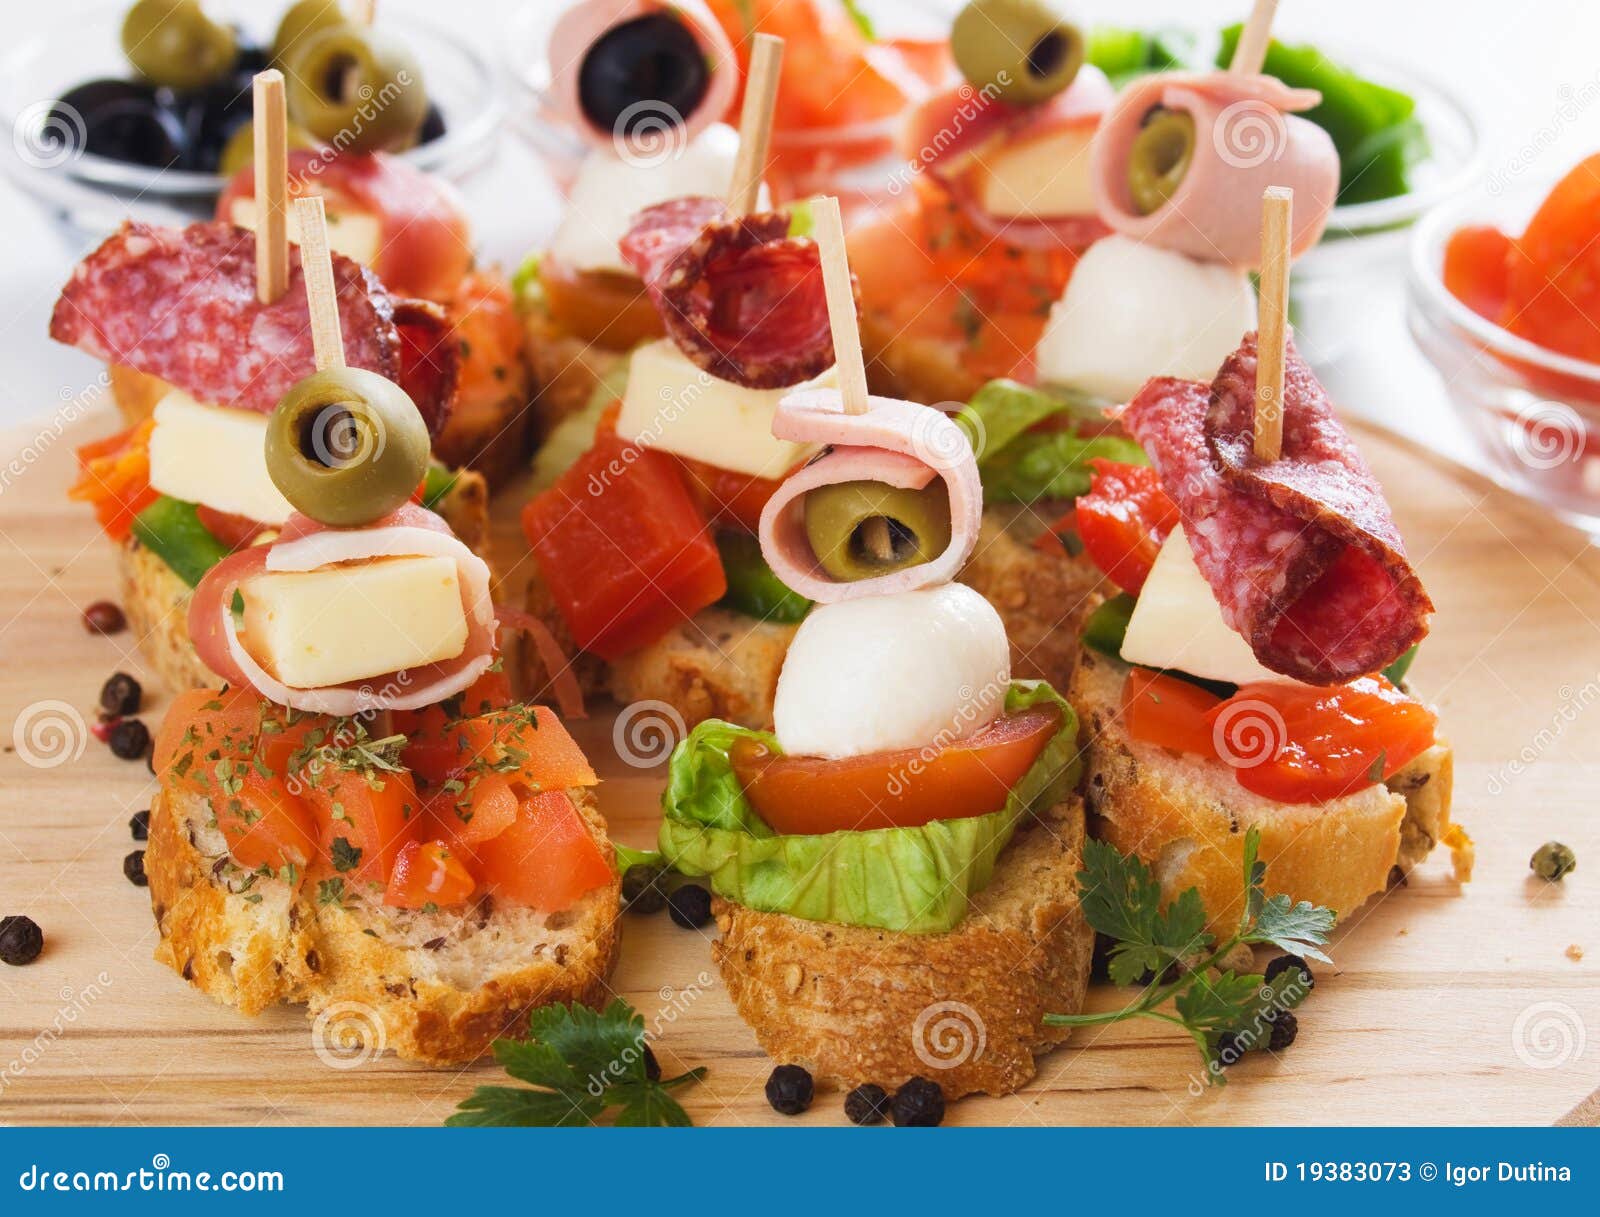 Canape Mit Italienischen Nahrungsmittelbestandteilen Stockbild - Bild ...